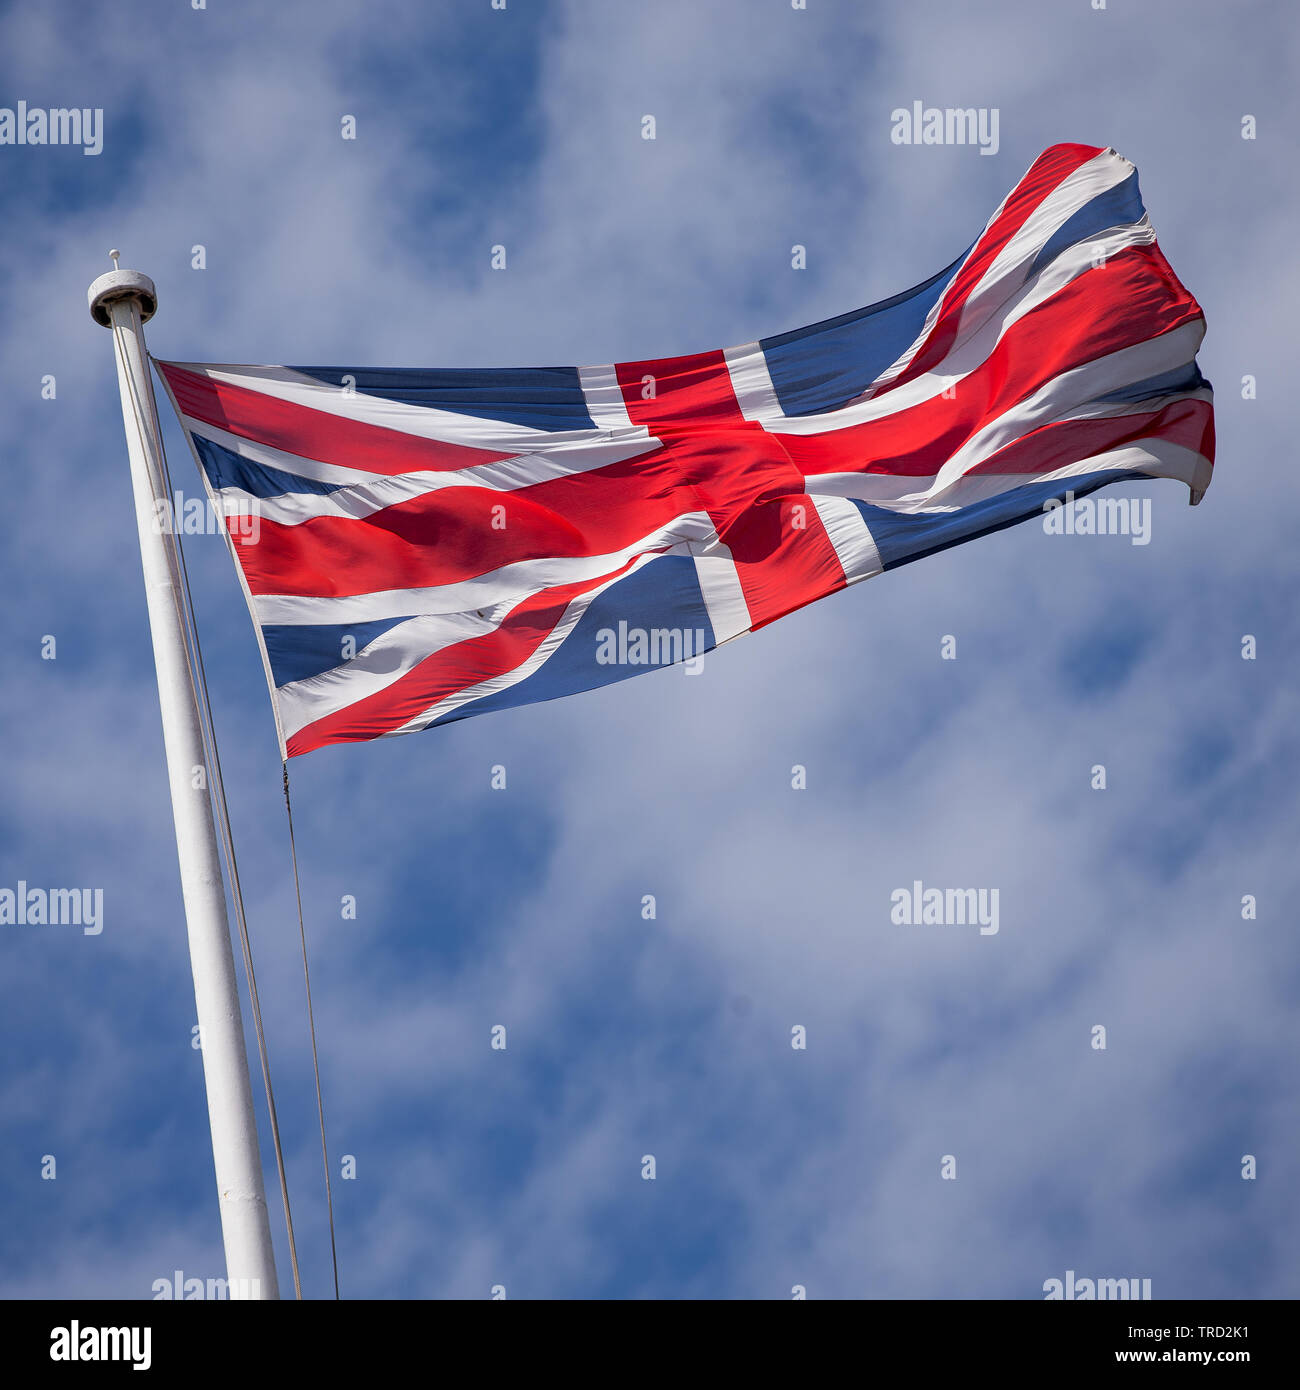 Unione bandiera del Regno Unito, la britannica Union Jack Foto Stock